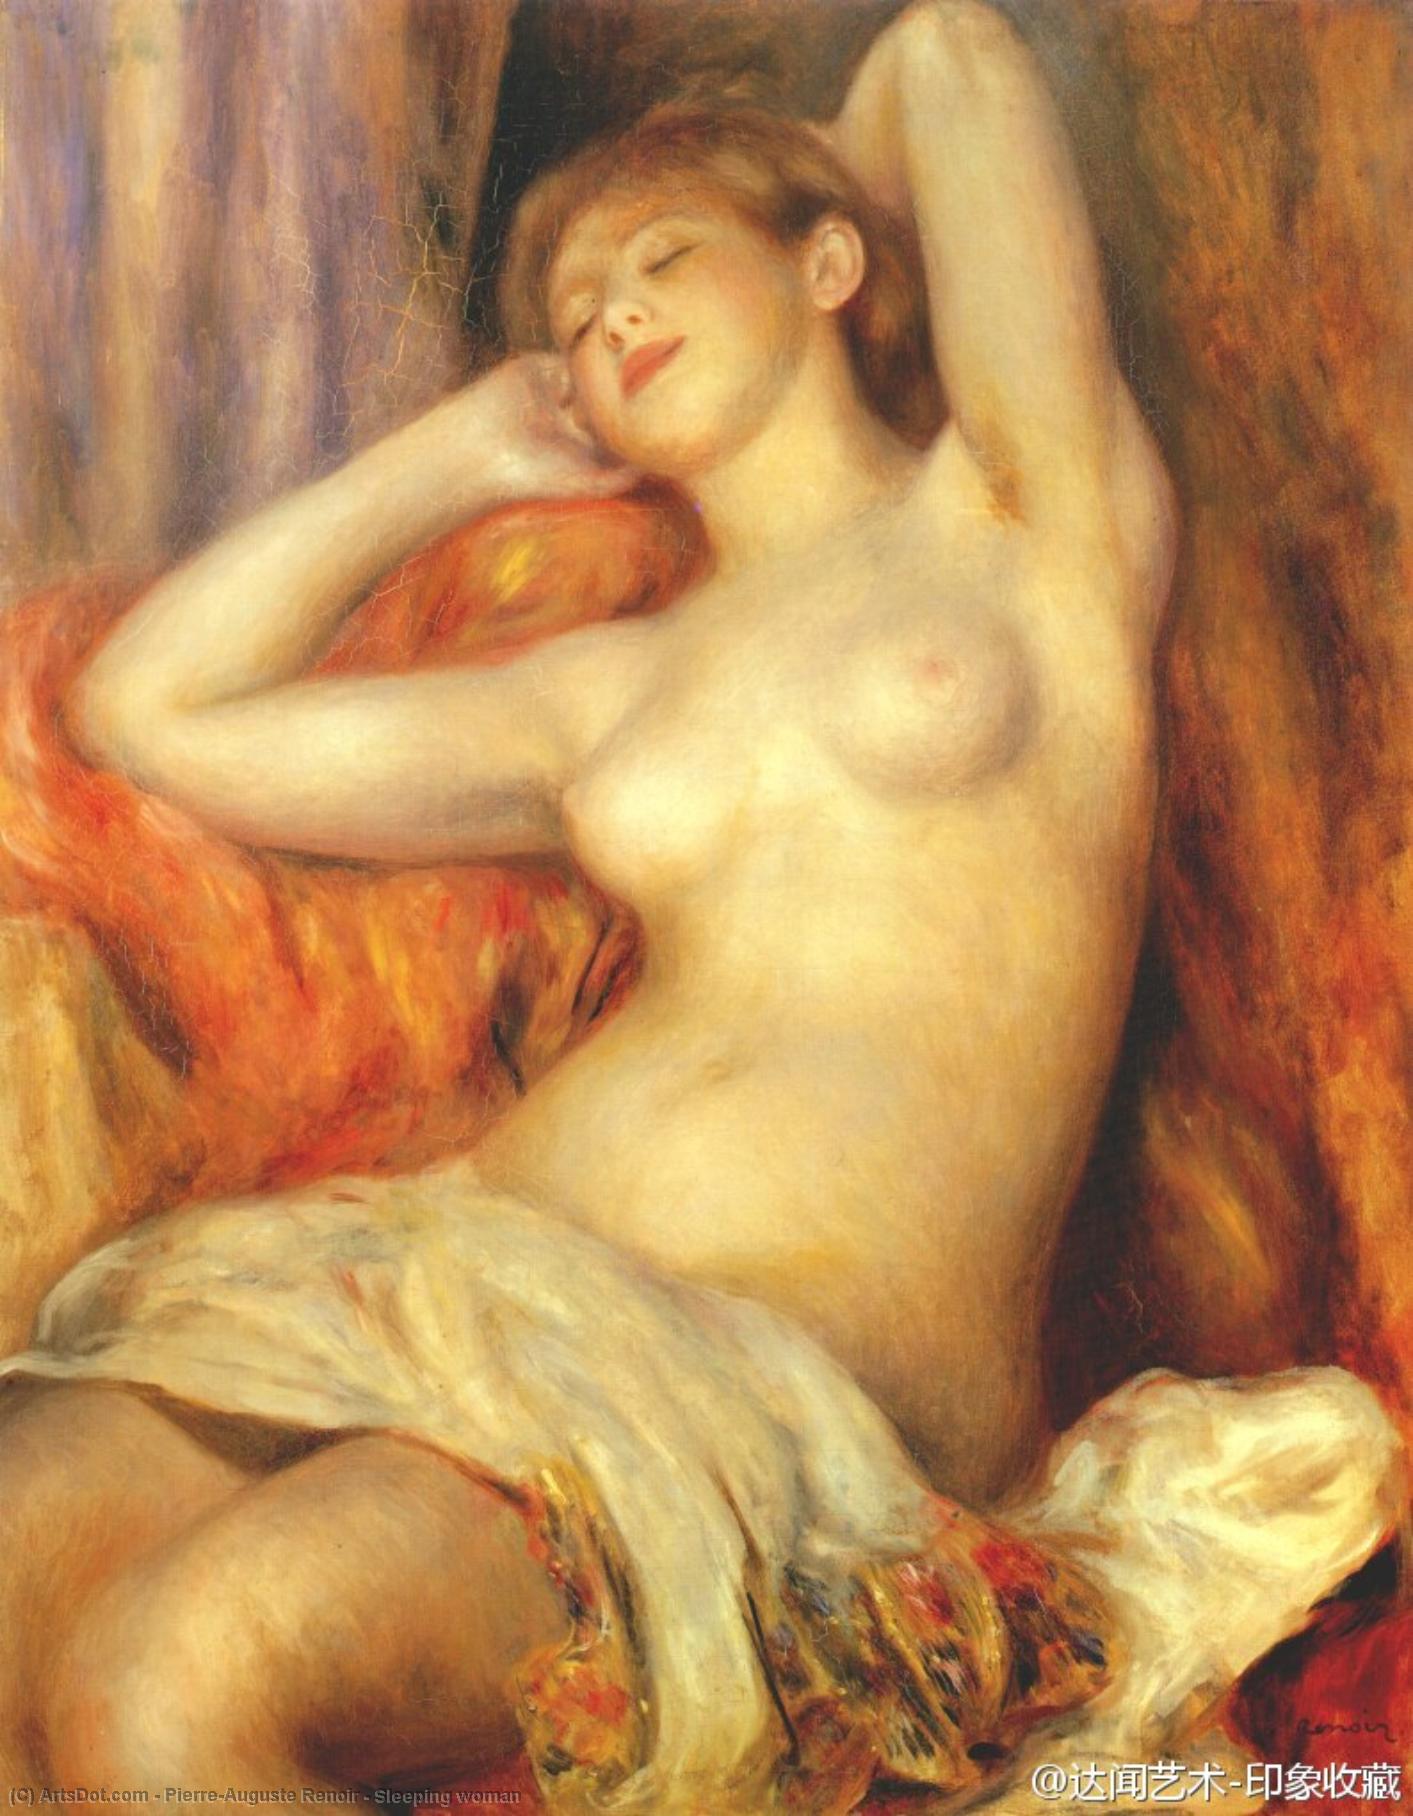 WikiOO.org - 백과 사전 - 회화, 삽화 Pierre-Auguste Renoir - Sleeping woman